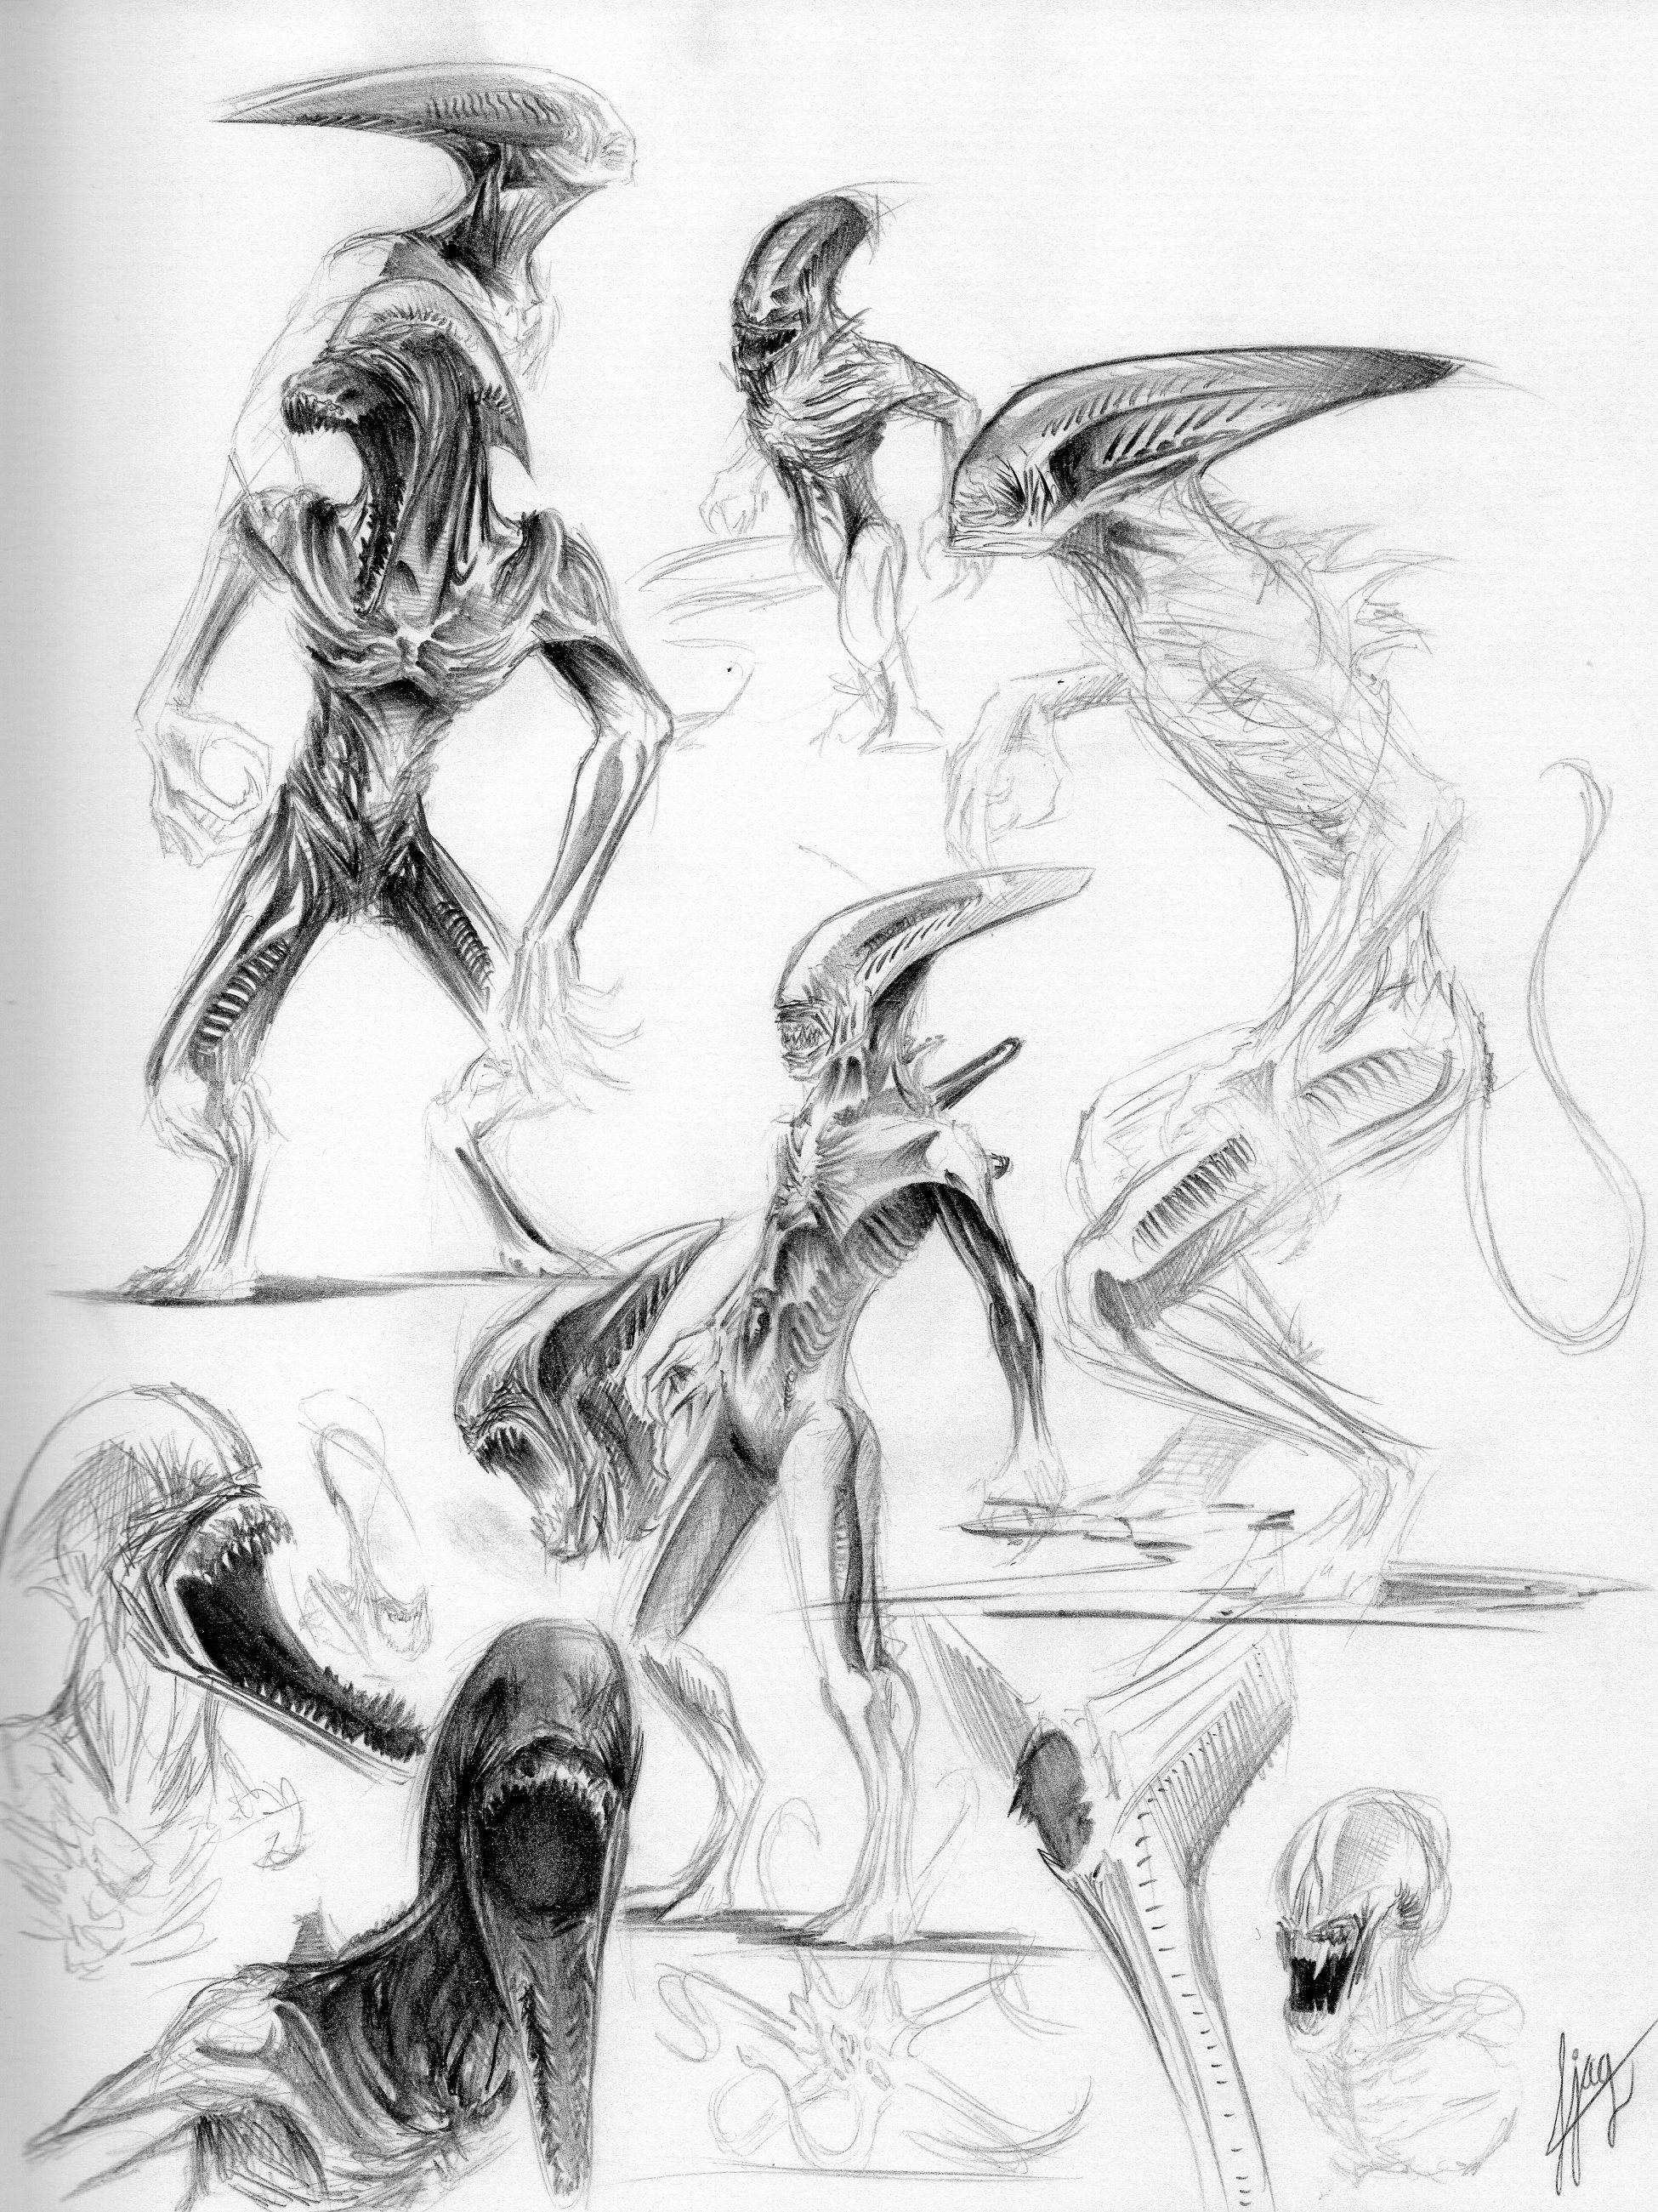 Fan Sketch of the different Deacon Alien profiles